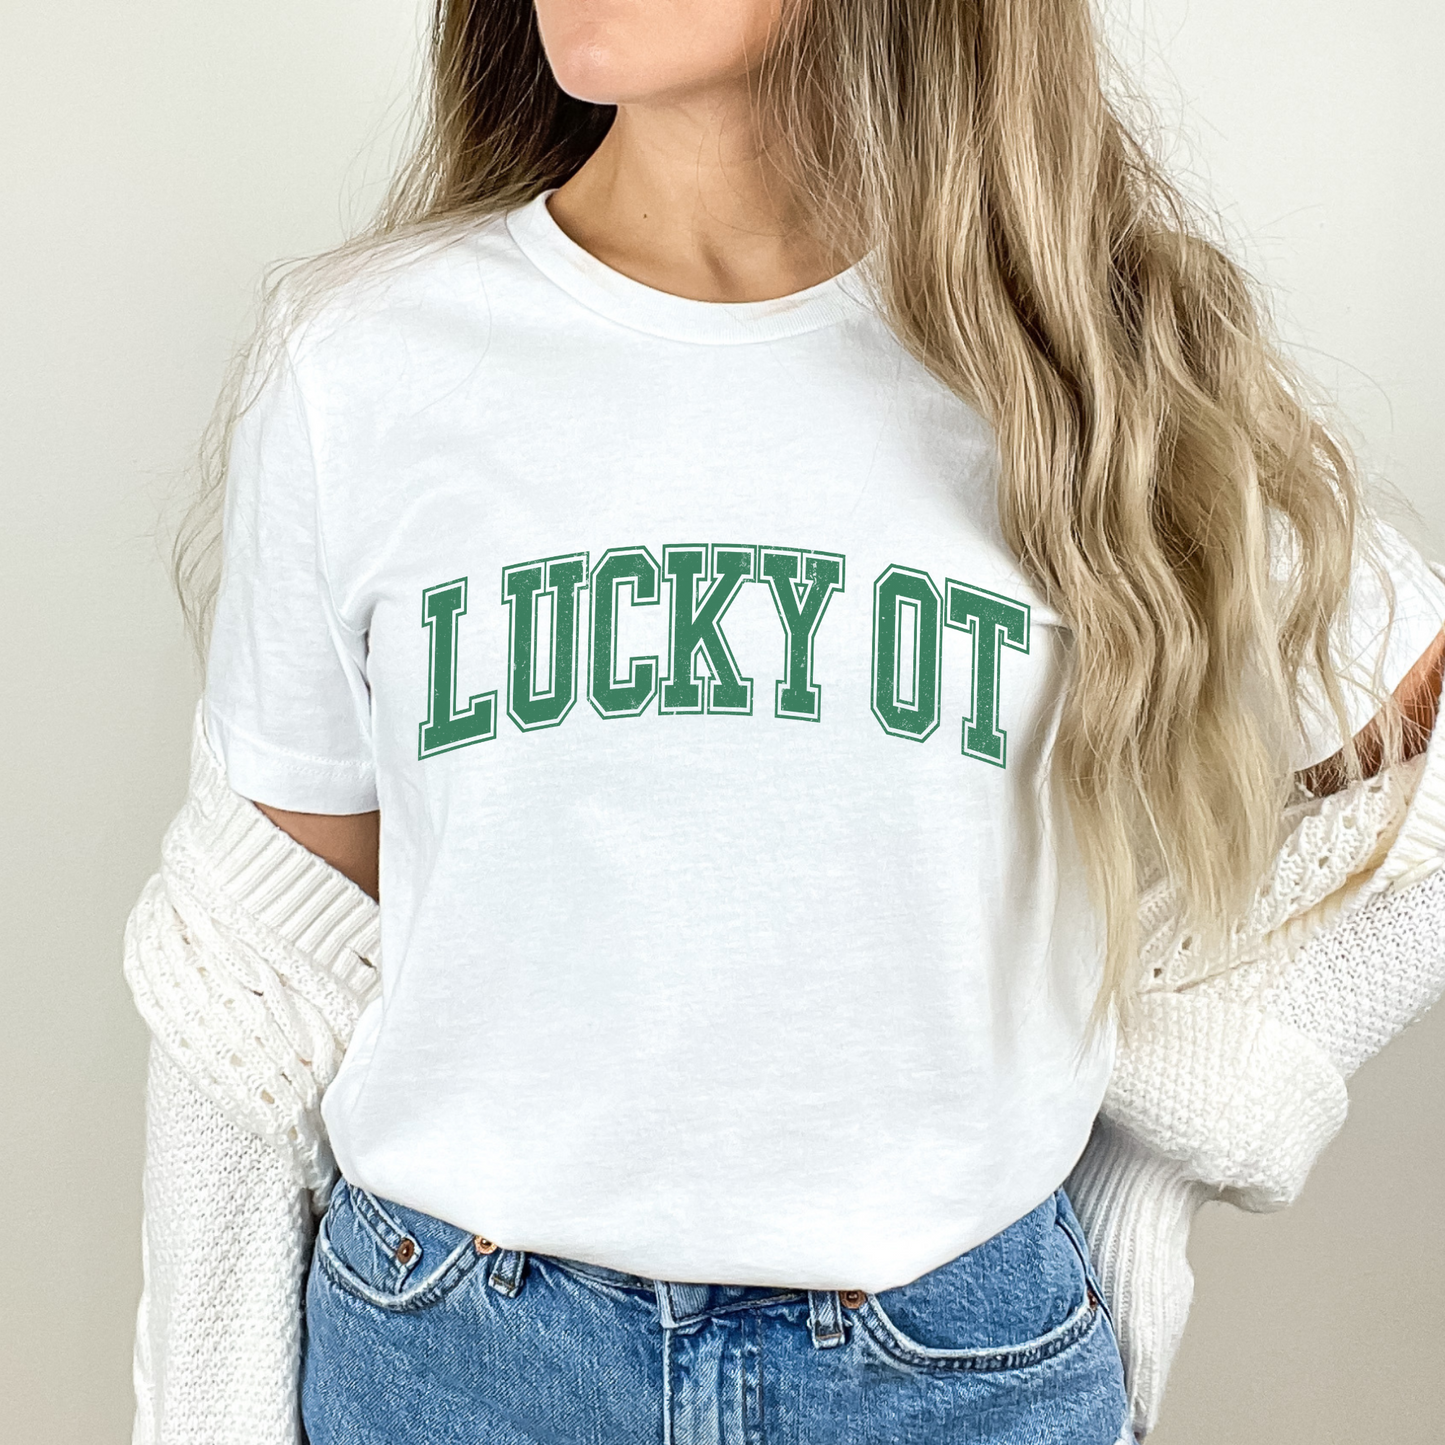 Lucky OT Distressed Jersey T-Shirt